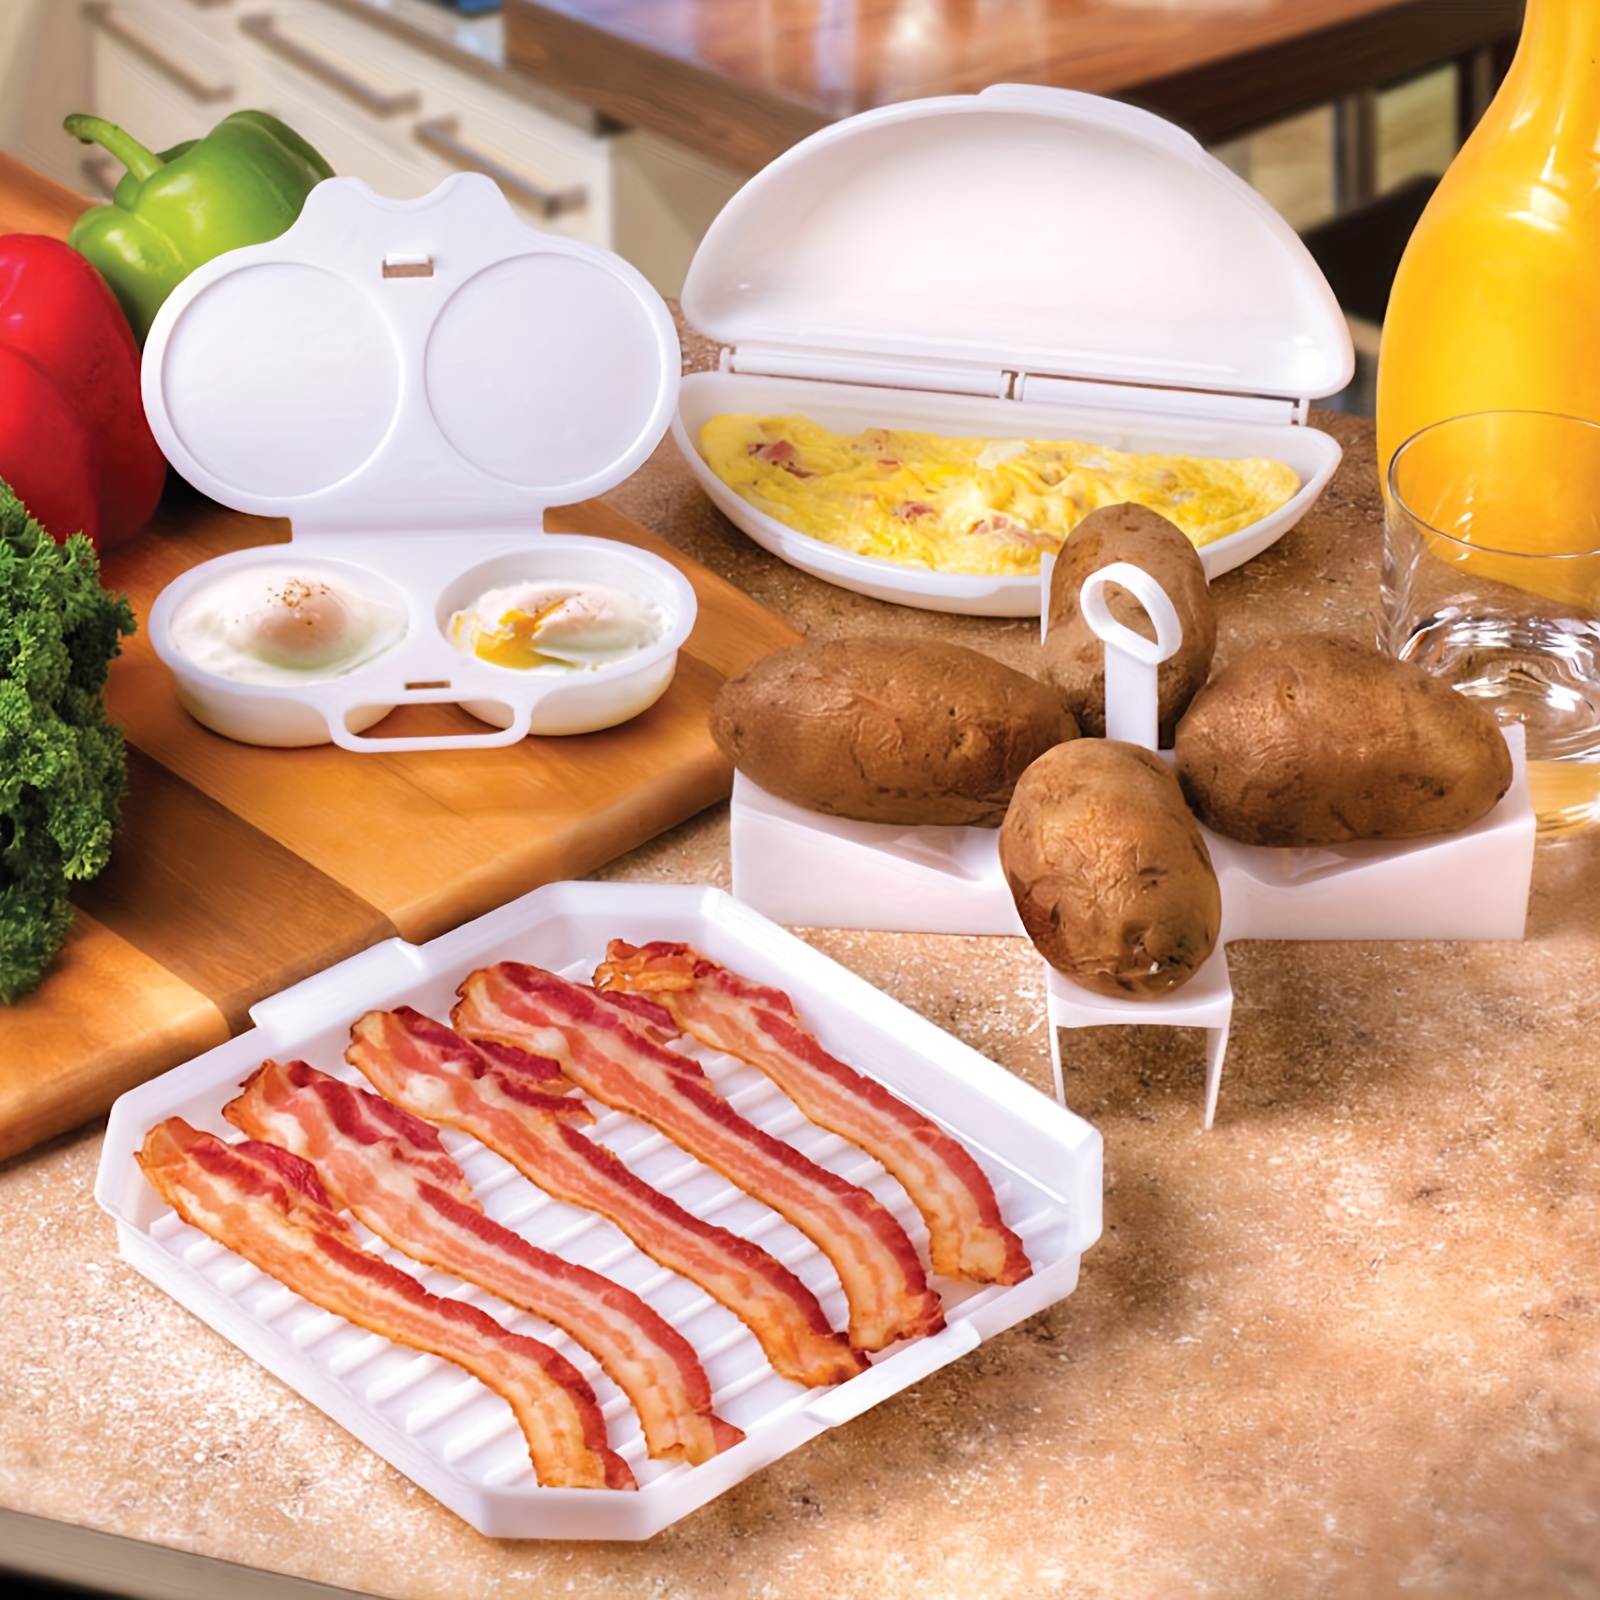 Microwave Omelet Maker - Egg Omelette Maker Tray, Egg Cooker